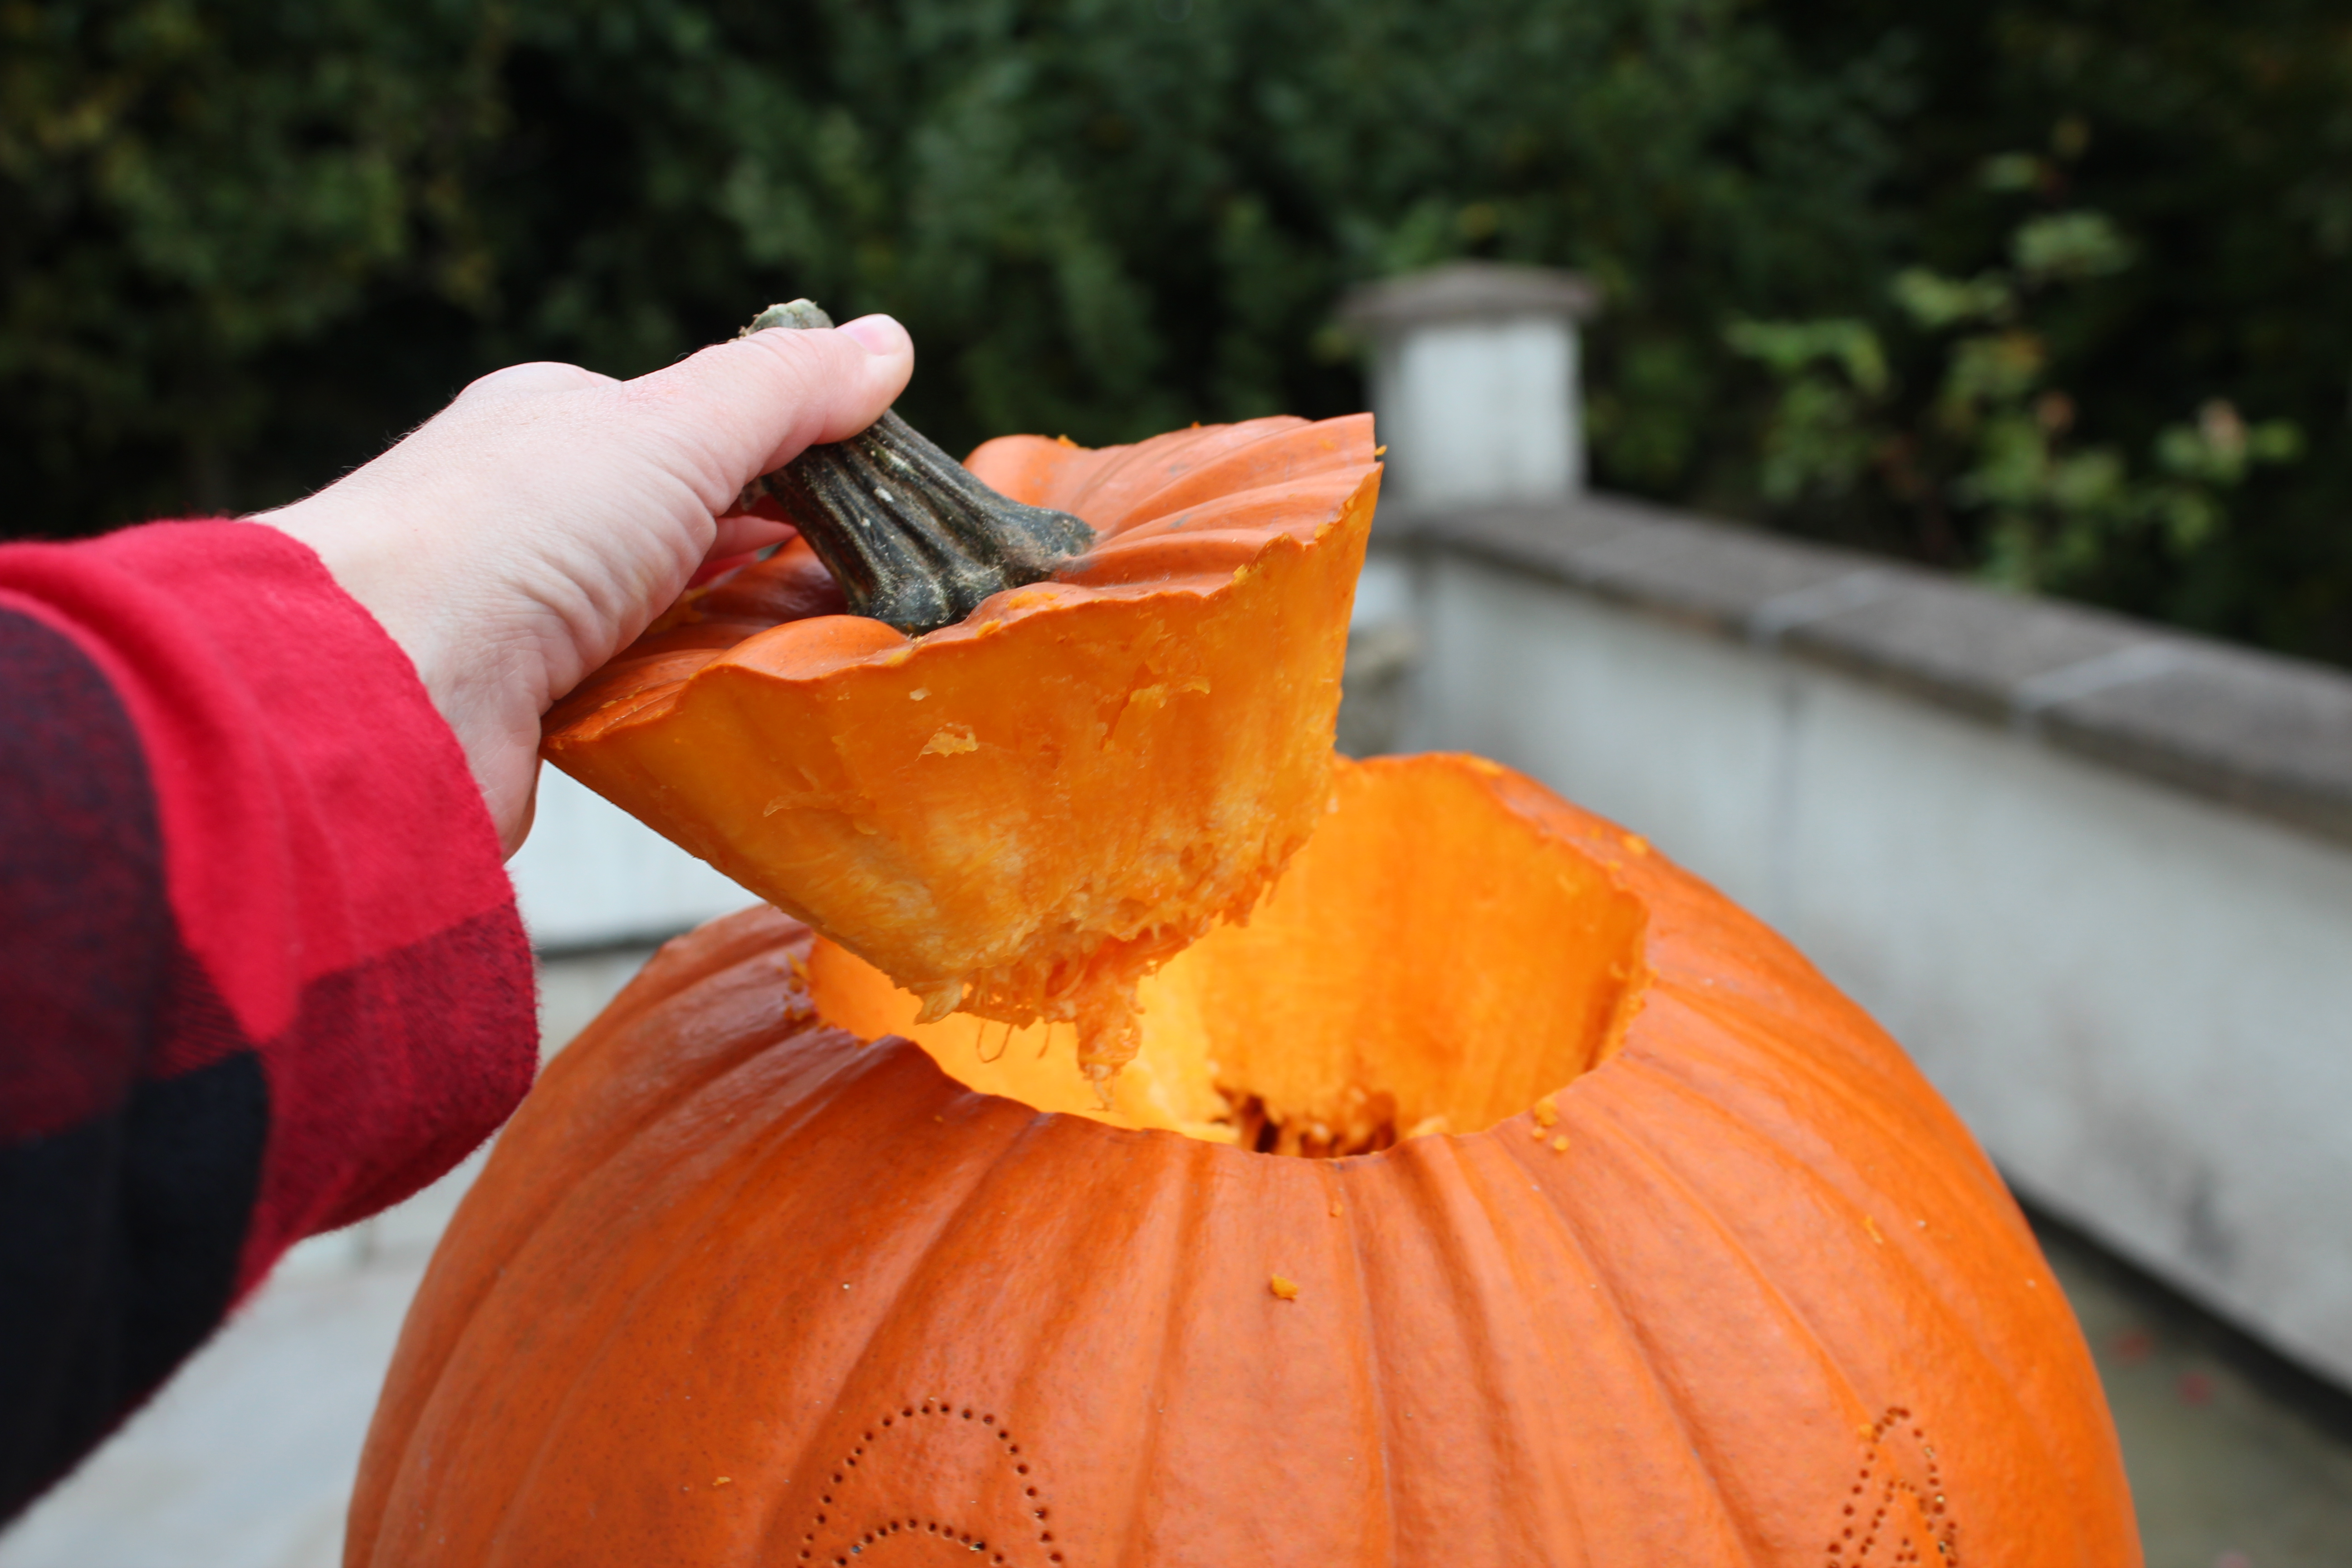 How do you carve a pumpkin?